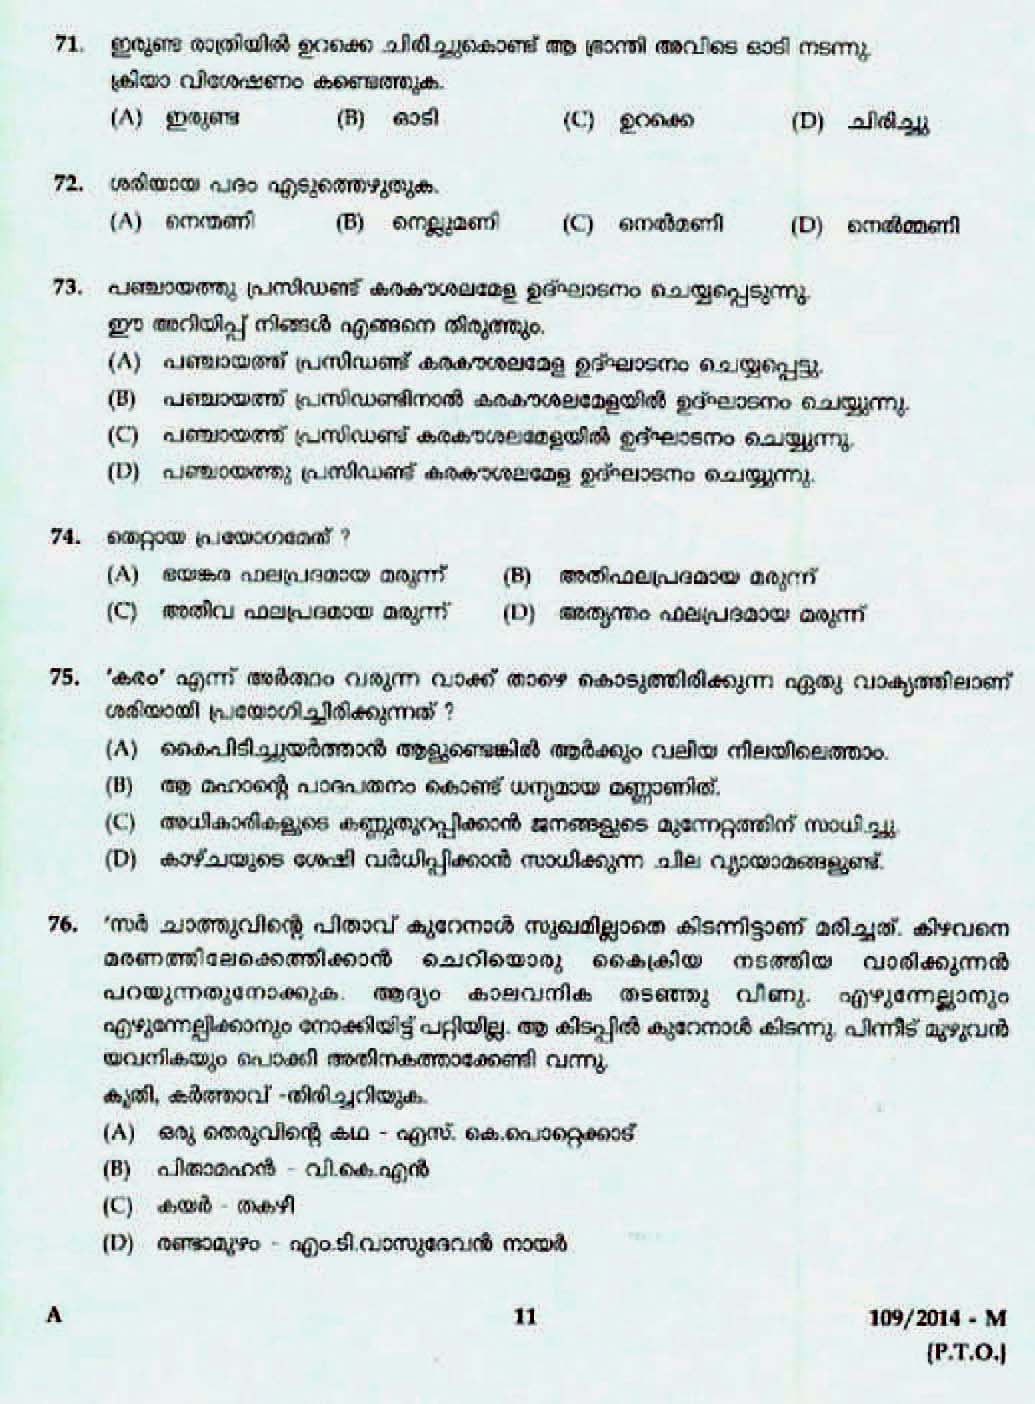 Kerala Last Grade Servants Exam 2014 Question Paper Code 1092014 M 9